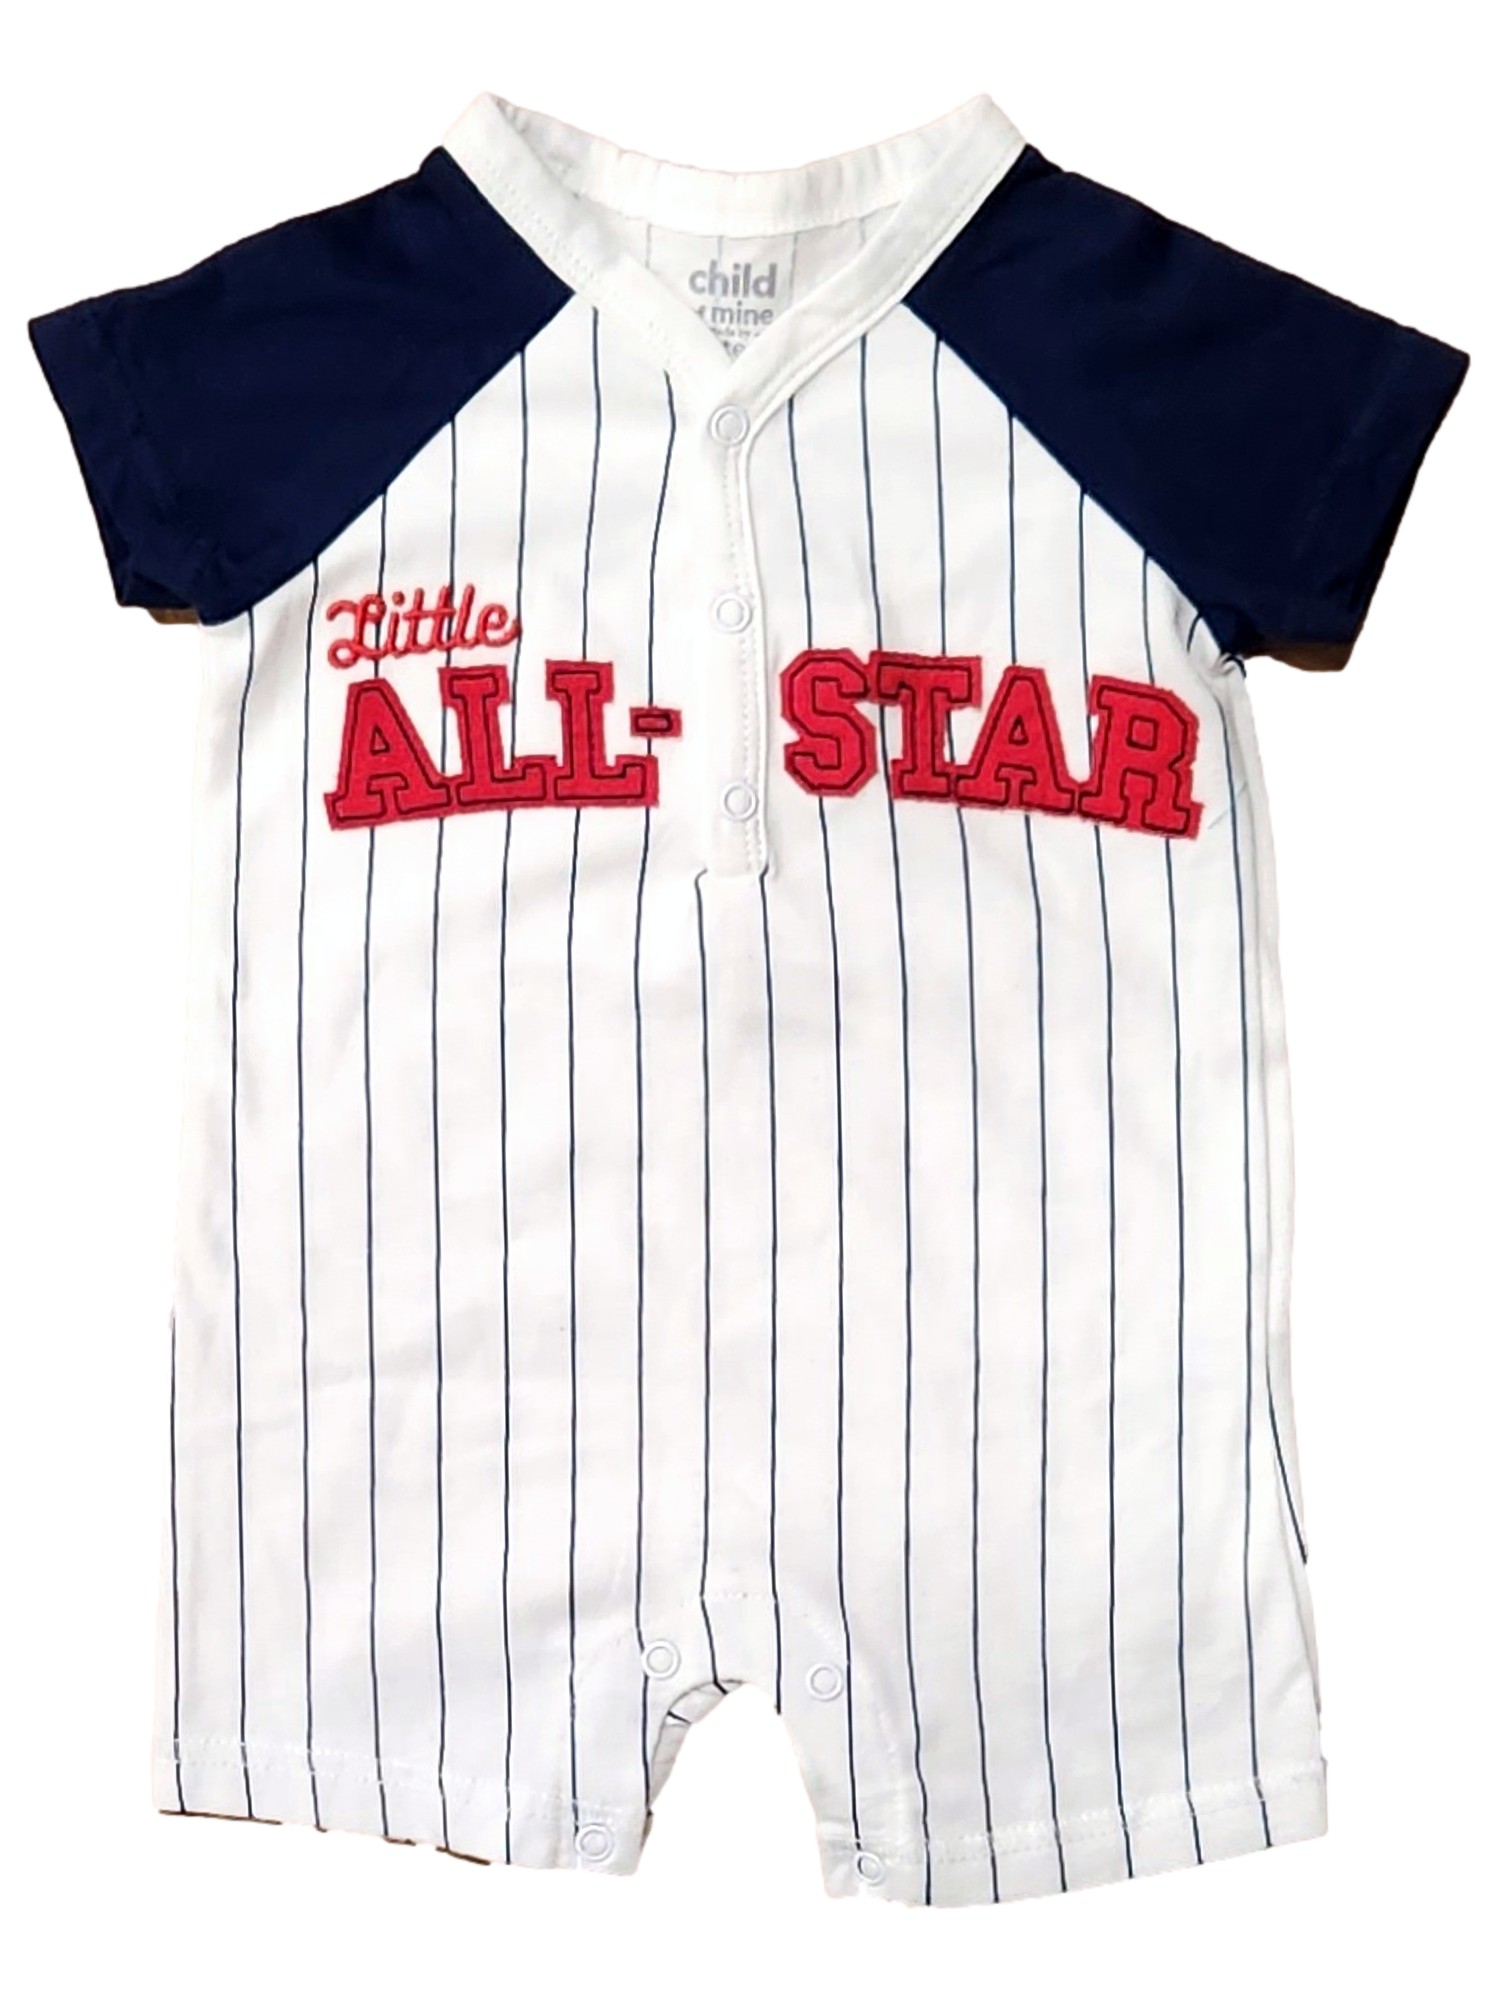 Carter's Infant Boys All-Star Baseball Snap Bottom Romper Bodysuit Baby Outfit 24M